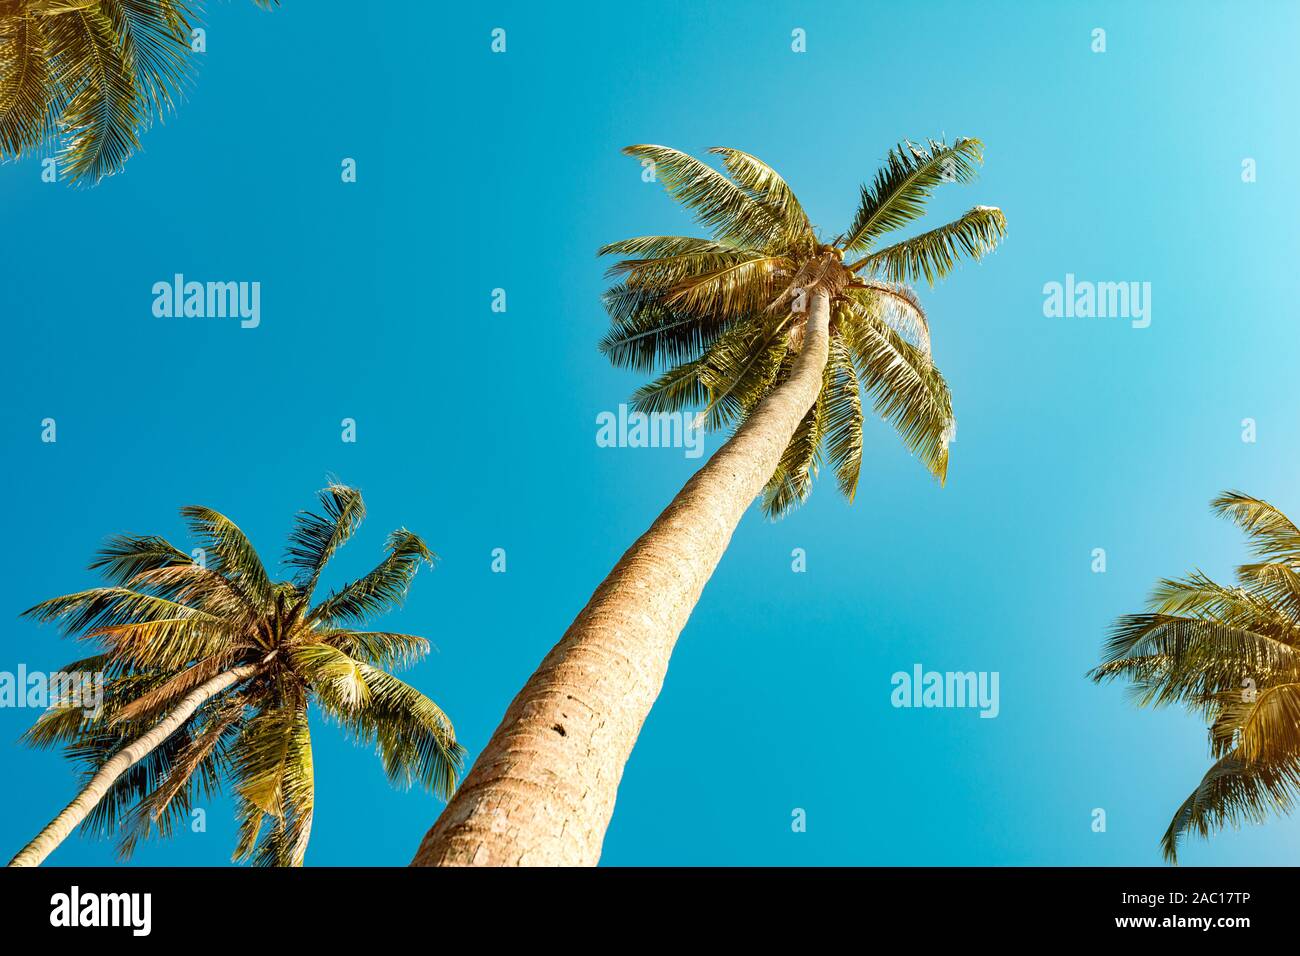 Belle plante palm tree against blue sky Banque D'Images